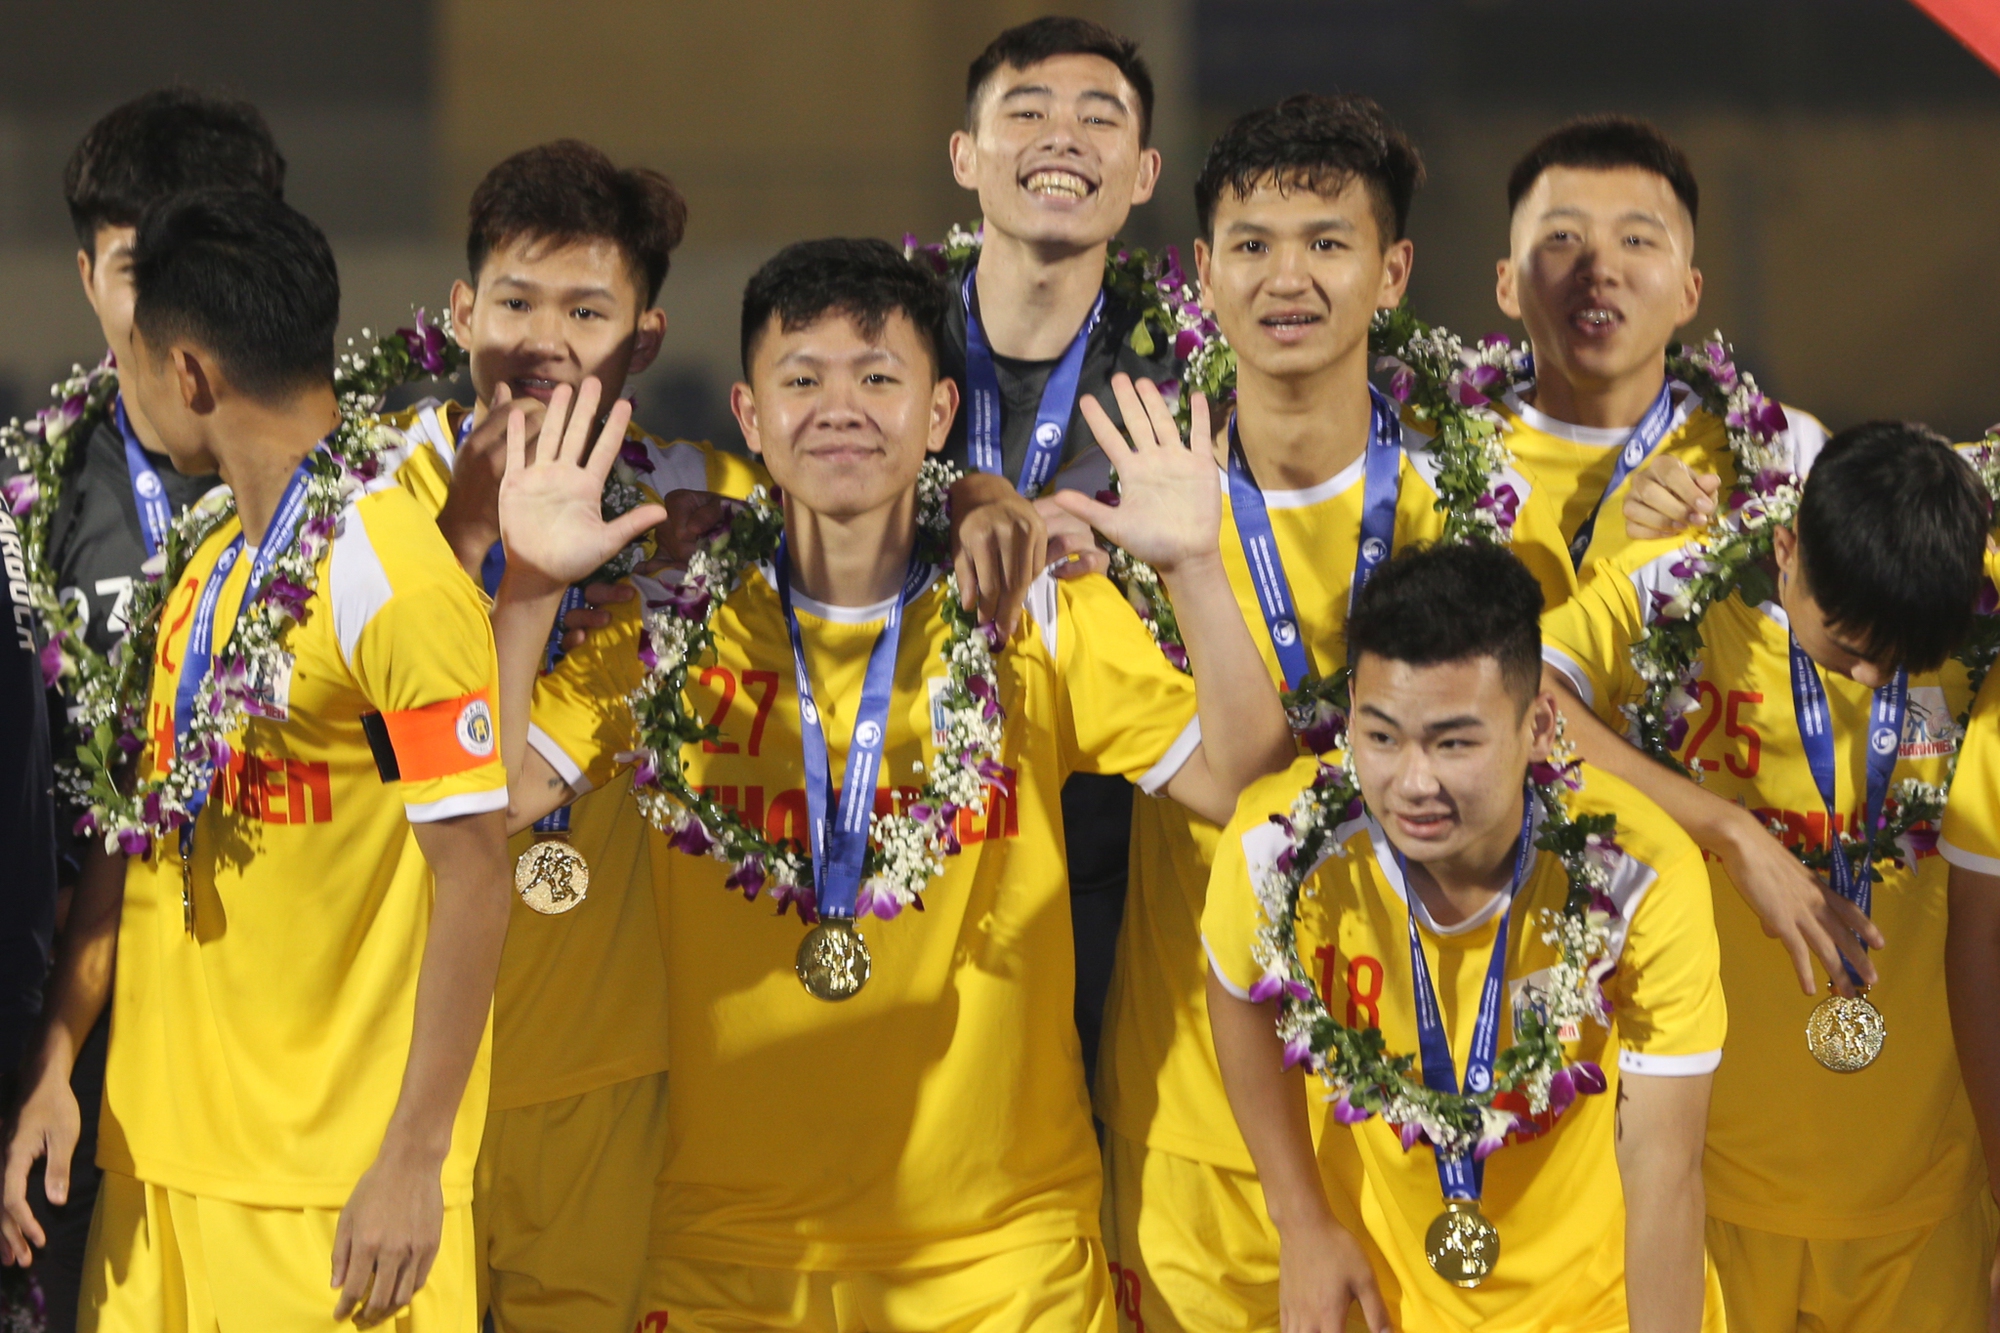 U21 Hà Nội vô địch U21 Quốc gia: Cảm xúc trái ngược giữa U21 Bình Dương và nhà vô địch - Ảnh 14.